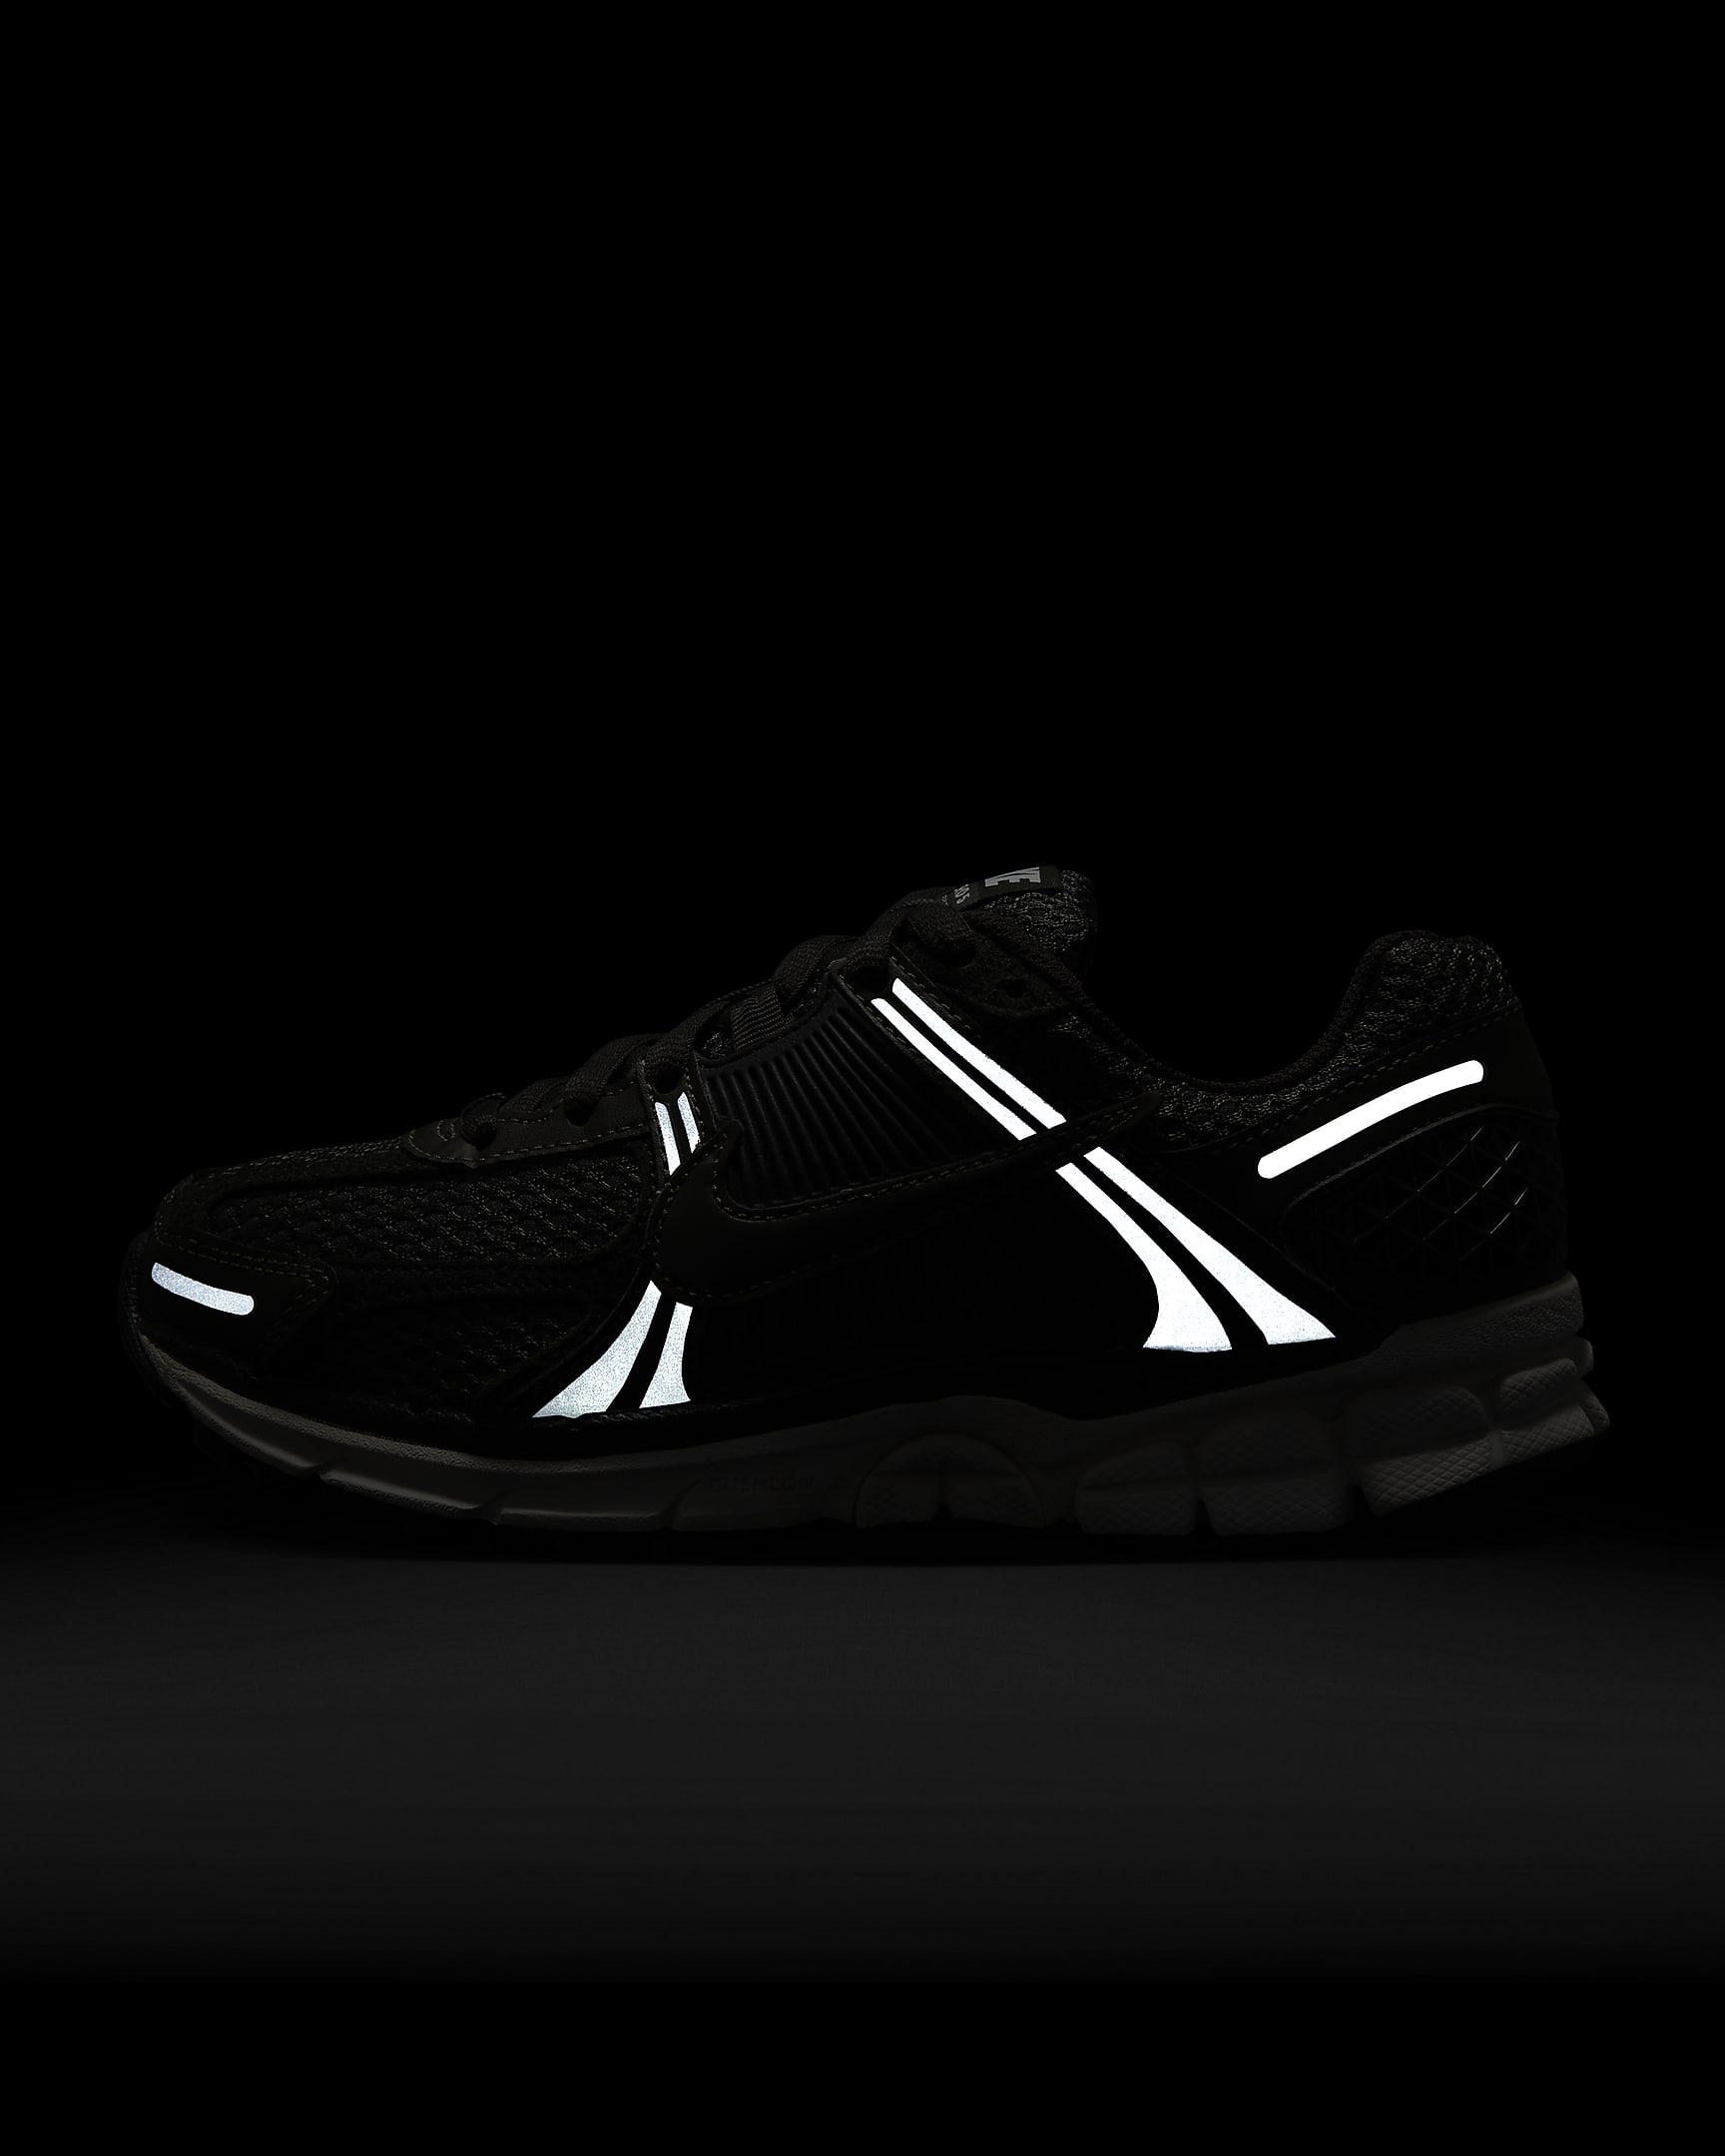 Nike Zoom Vomero 5 Women's Shoes - Cargo Khaki/Sail/Metallic Silver/Sequoia